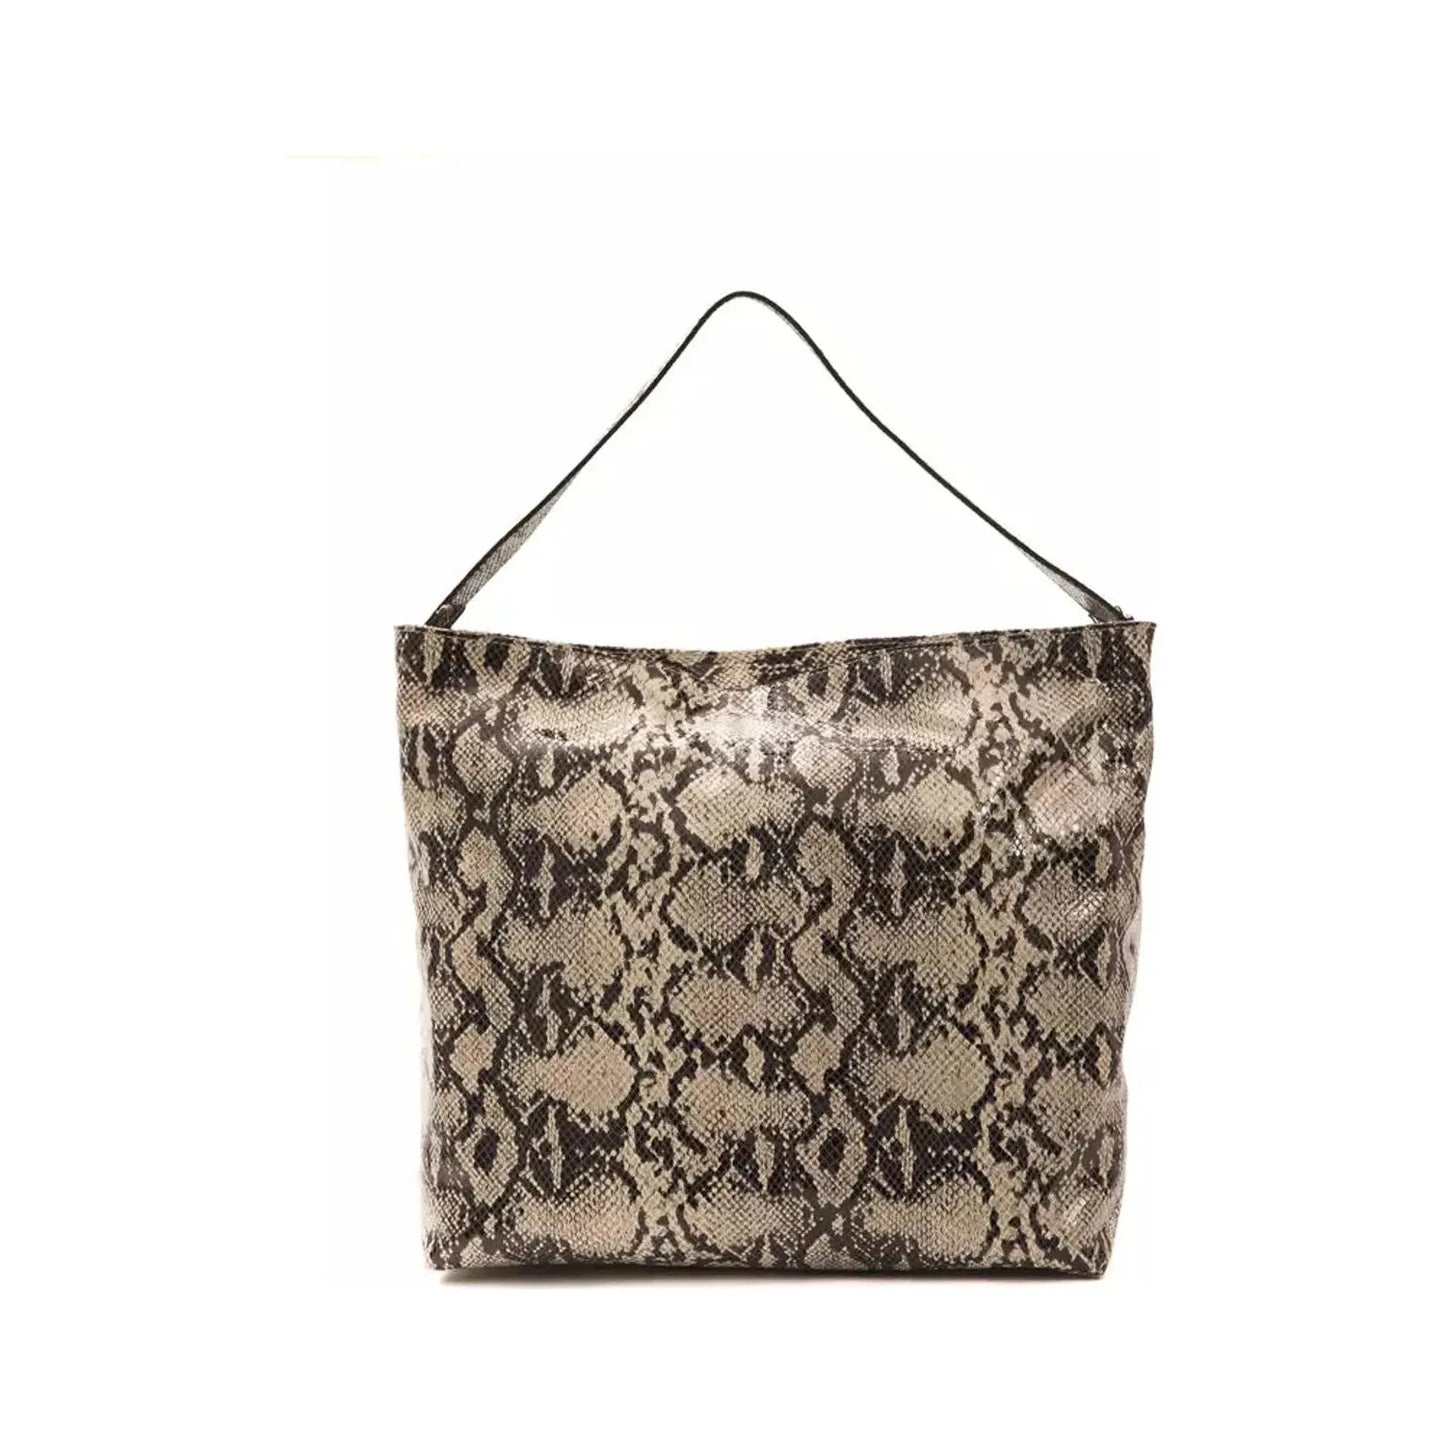 Pompei Donatella Chic Python Print Leather Shoulder Bag gray-leather-shoulder-bag-5 stock_product_image_5785_1552303026-26-0611caf4-637.webp